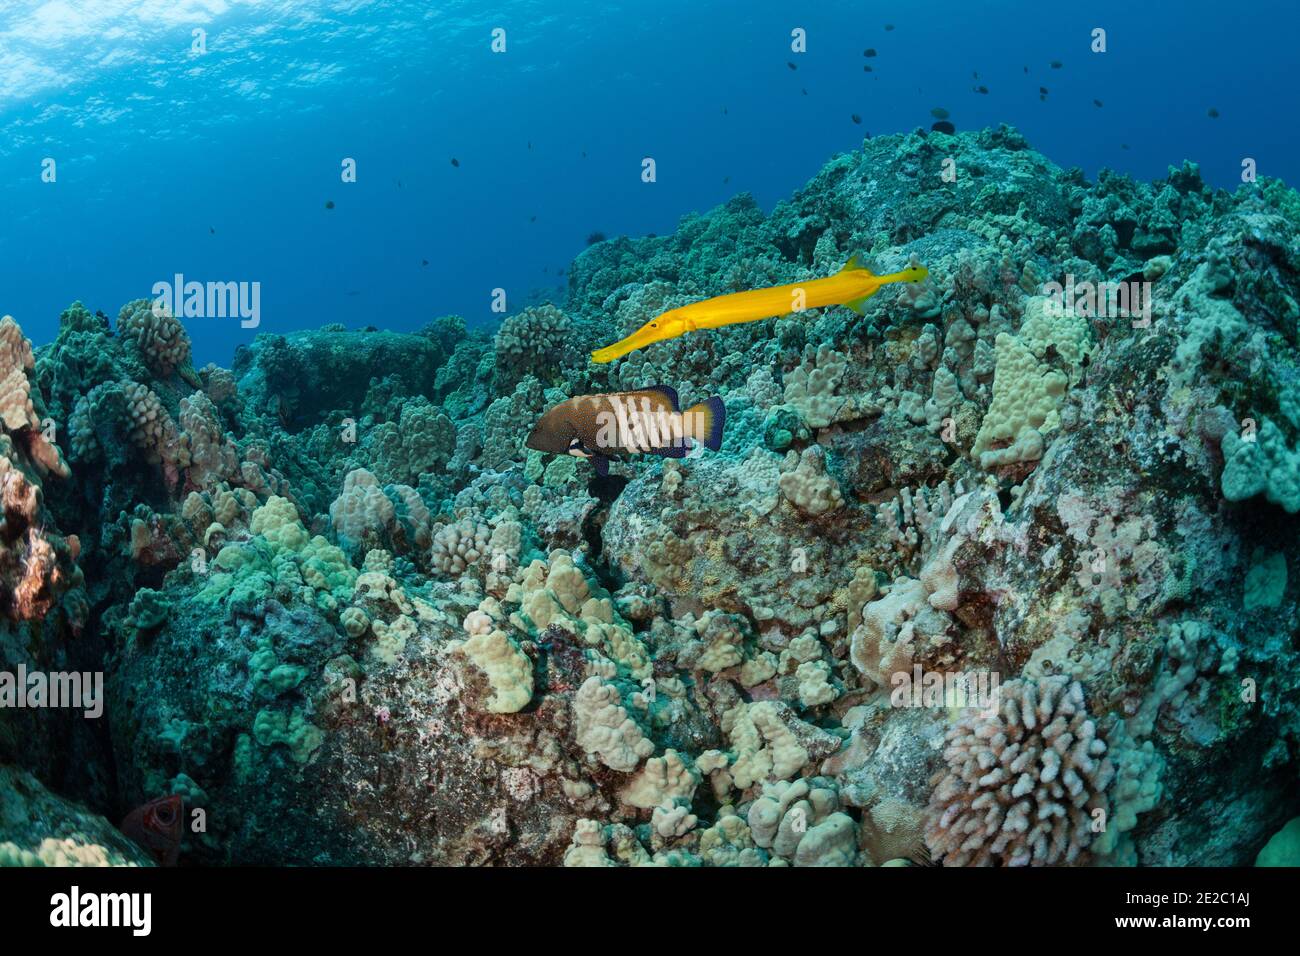 Le poisson-fond du Pacifique, en phase de couleur jaune, s'associe à un mérou de paon pour améliorer son succès de chasse. North Kona, Hawaii, Etats-Unis ( Océan Pacifique ) Banque D'Images